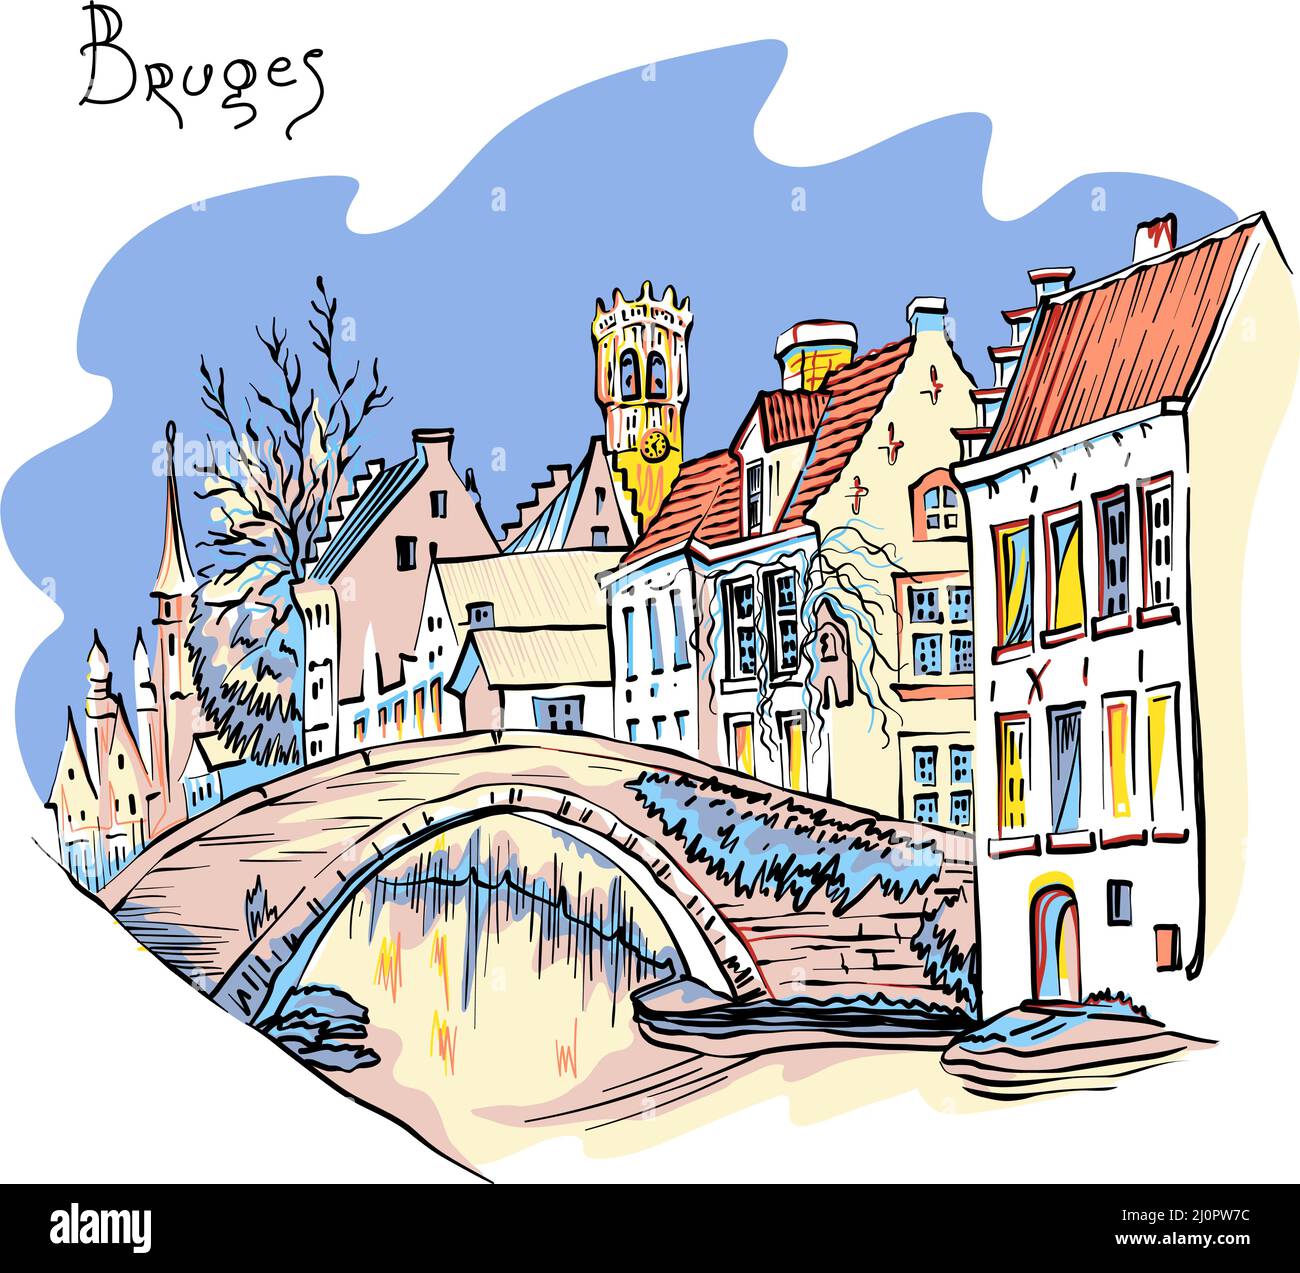 Vektorfarbe Städtische Skizze des Brügger Kanals Steenhouwers mit Glockenturm und schönen mittelalterlichen Häusern, Belgien Stock Vektor